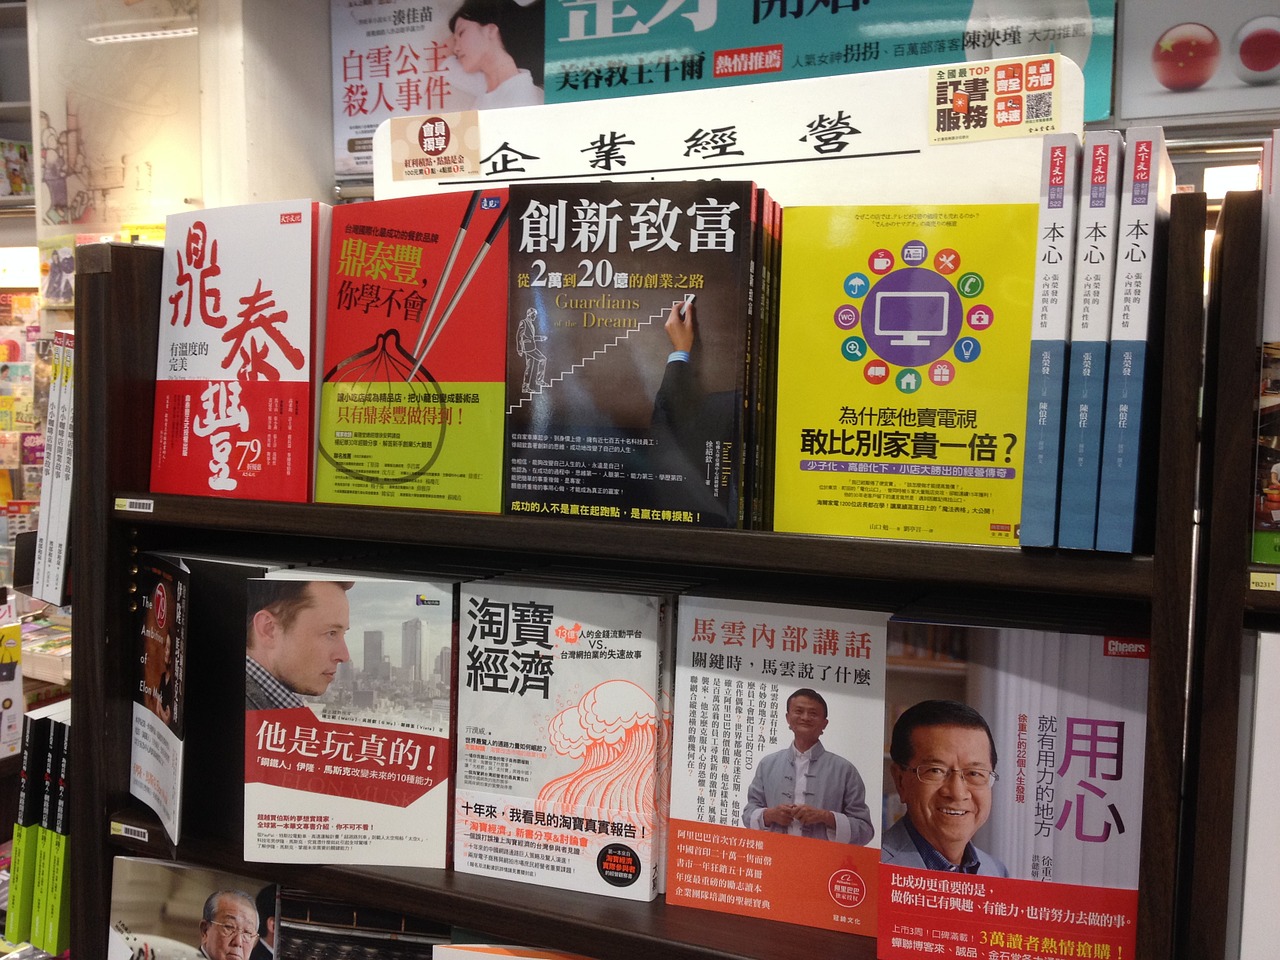 bookstore books taipei free photo